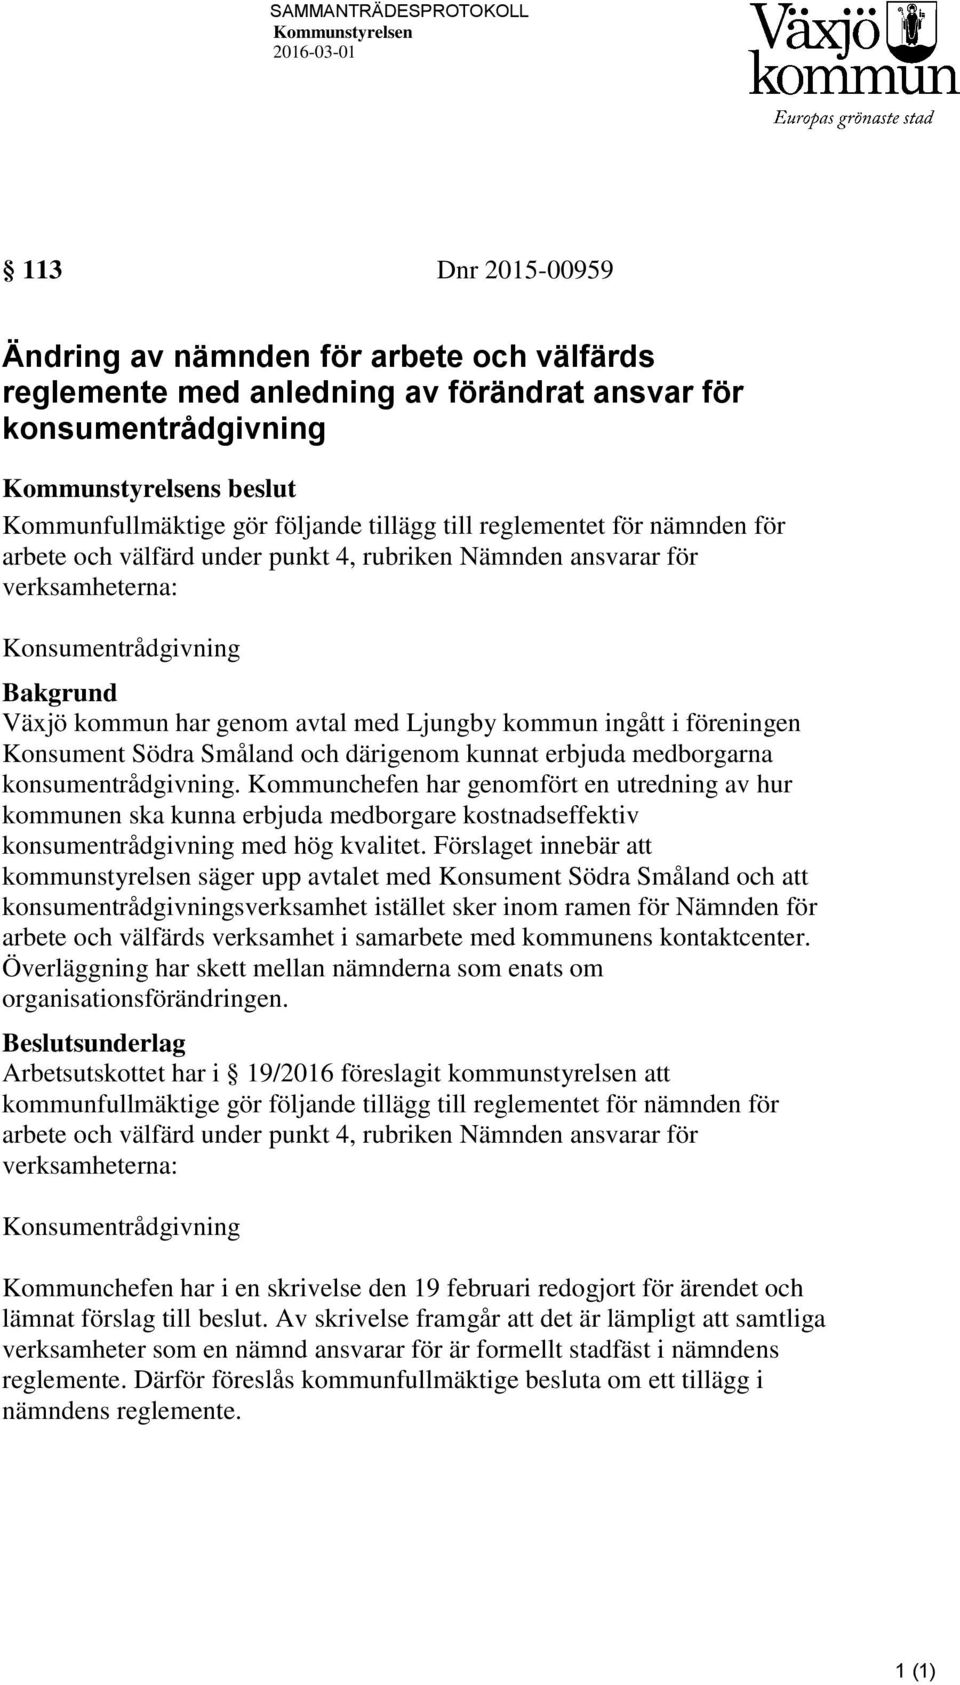 kommun har genom avtal med Ljungby kommun ingått i föreningen Konsument Södra Småland och därigenom kunnat erbjuda medborgarna konsumentrådgivning.